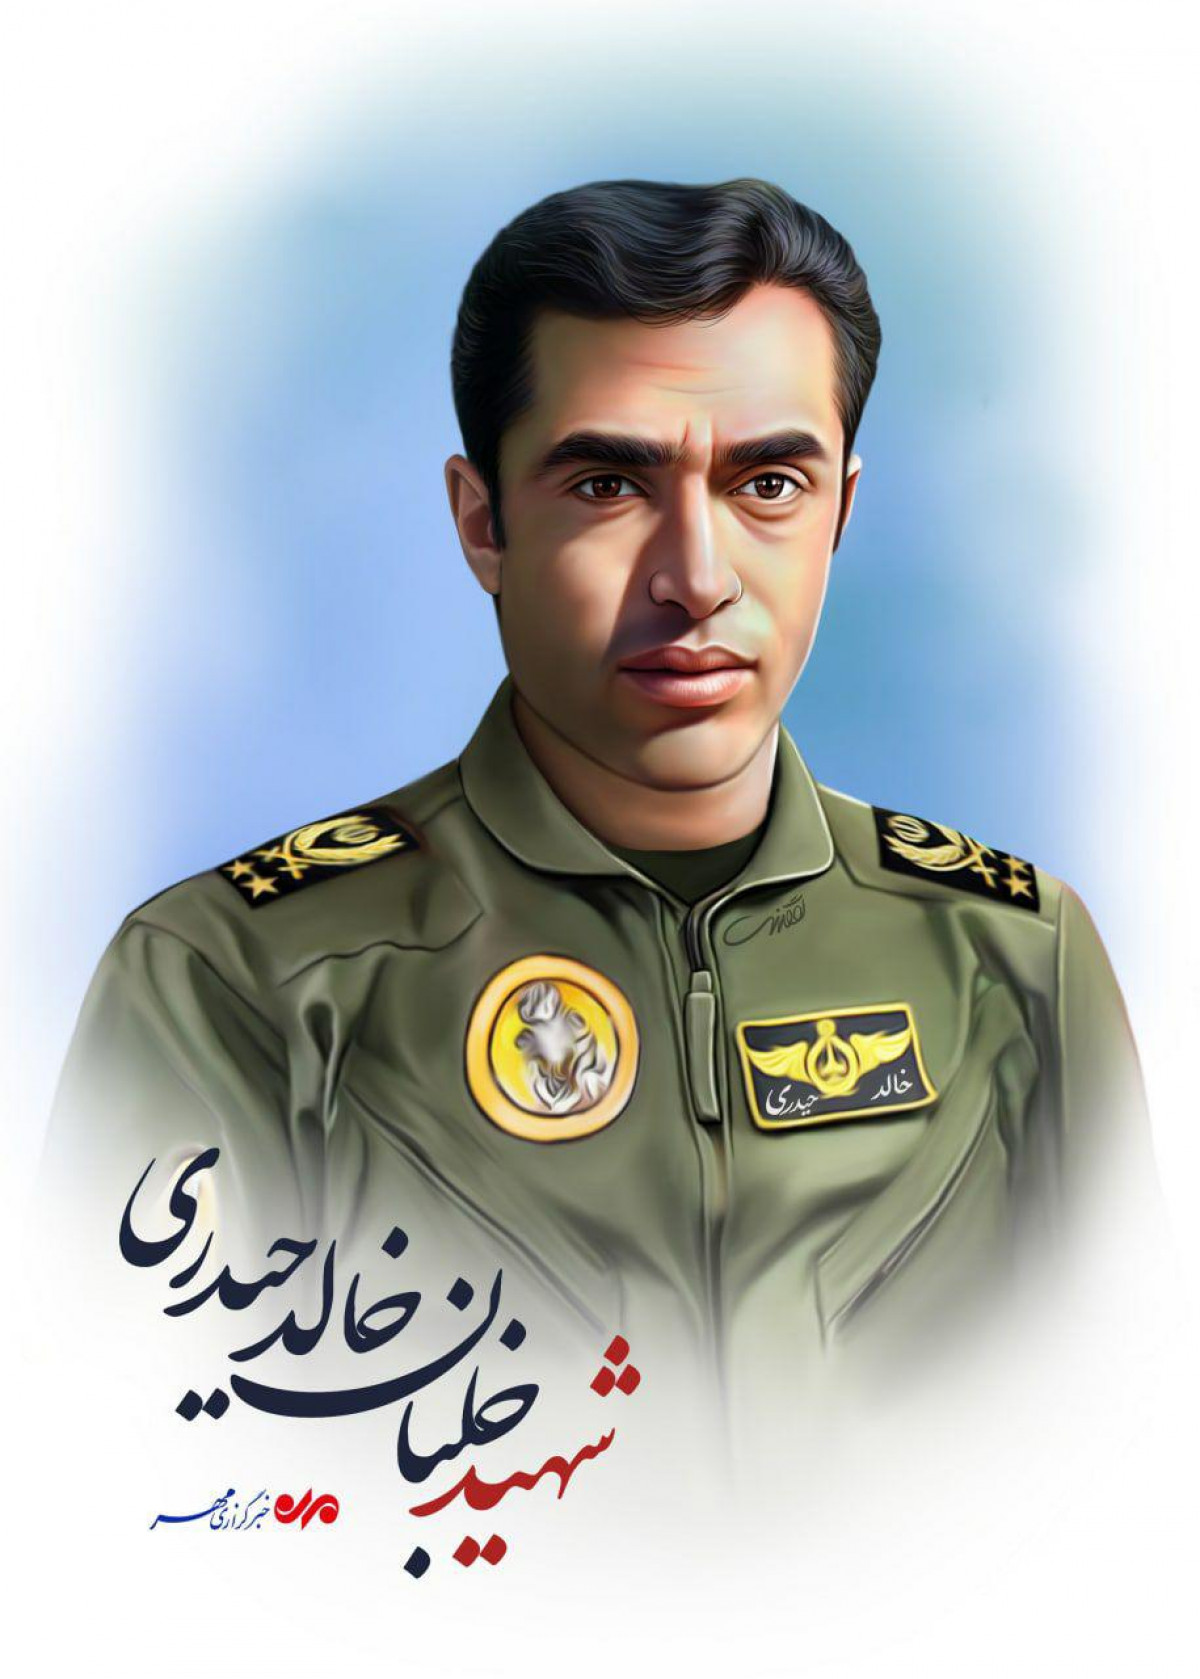 شهید خلبان خالد حیدری از شهدای اهل سنت دفاع مقدس